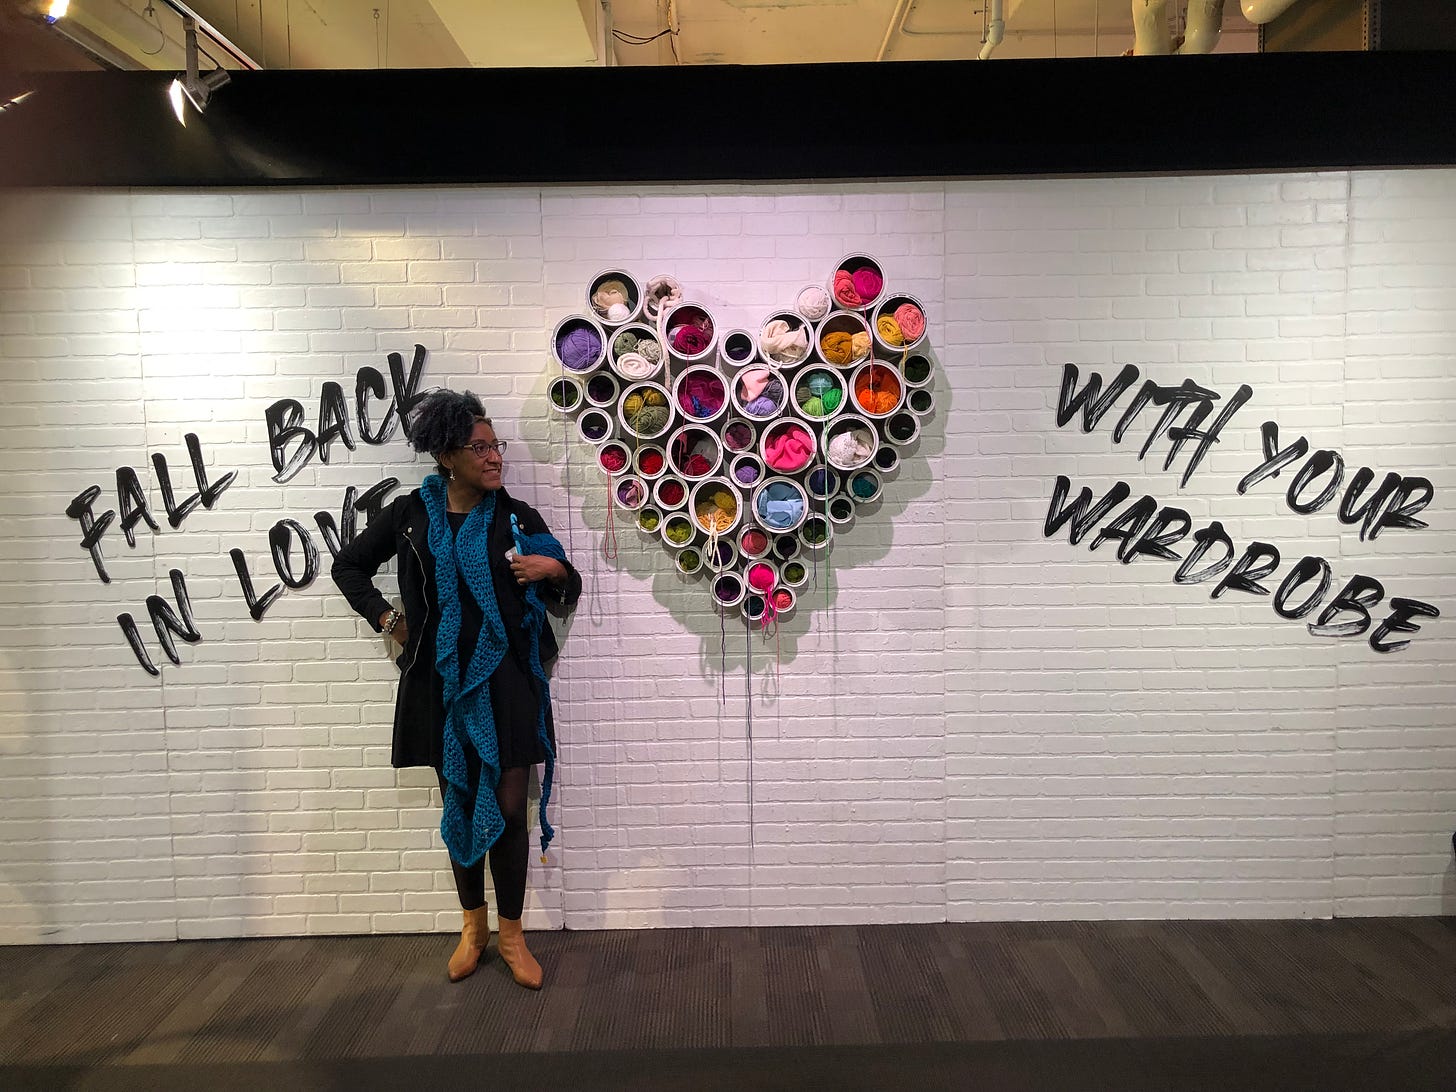 Kristen next to wall of yarn in shape of heart